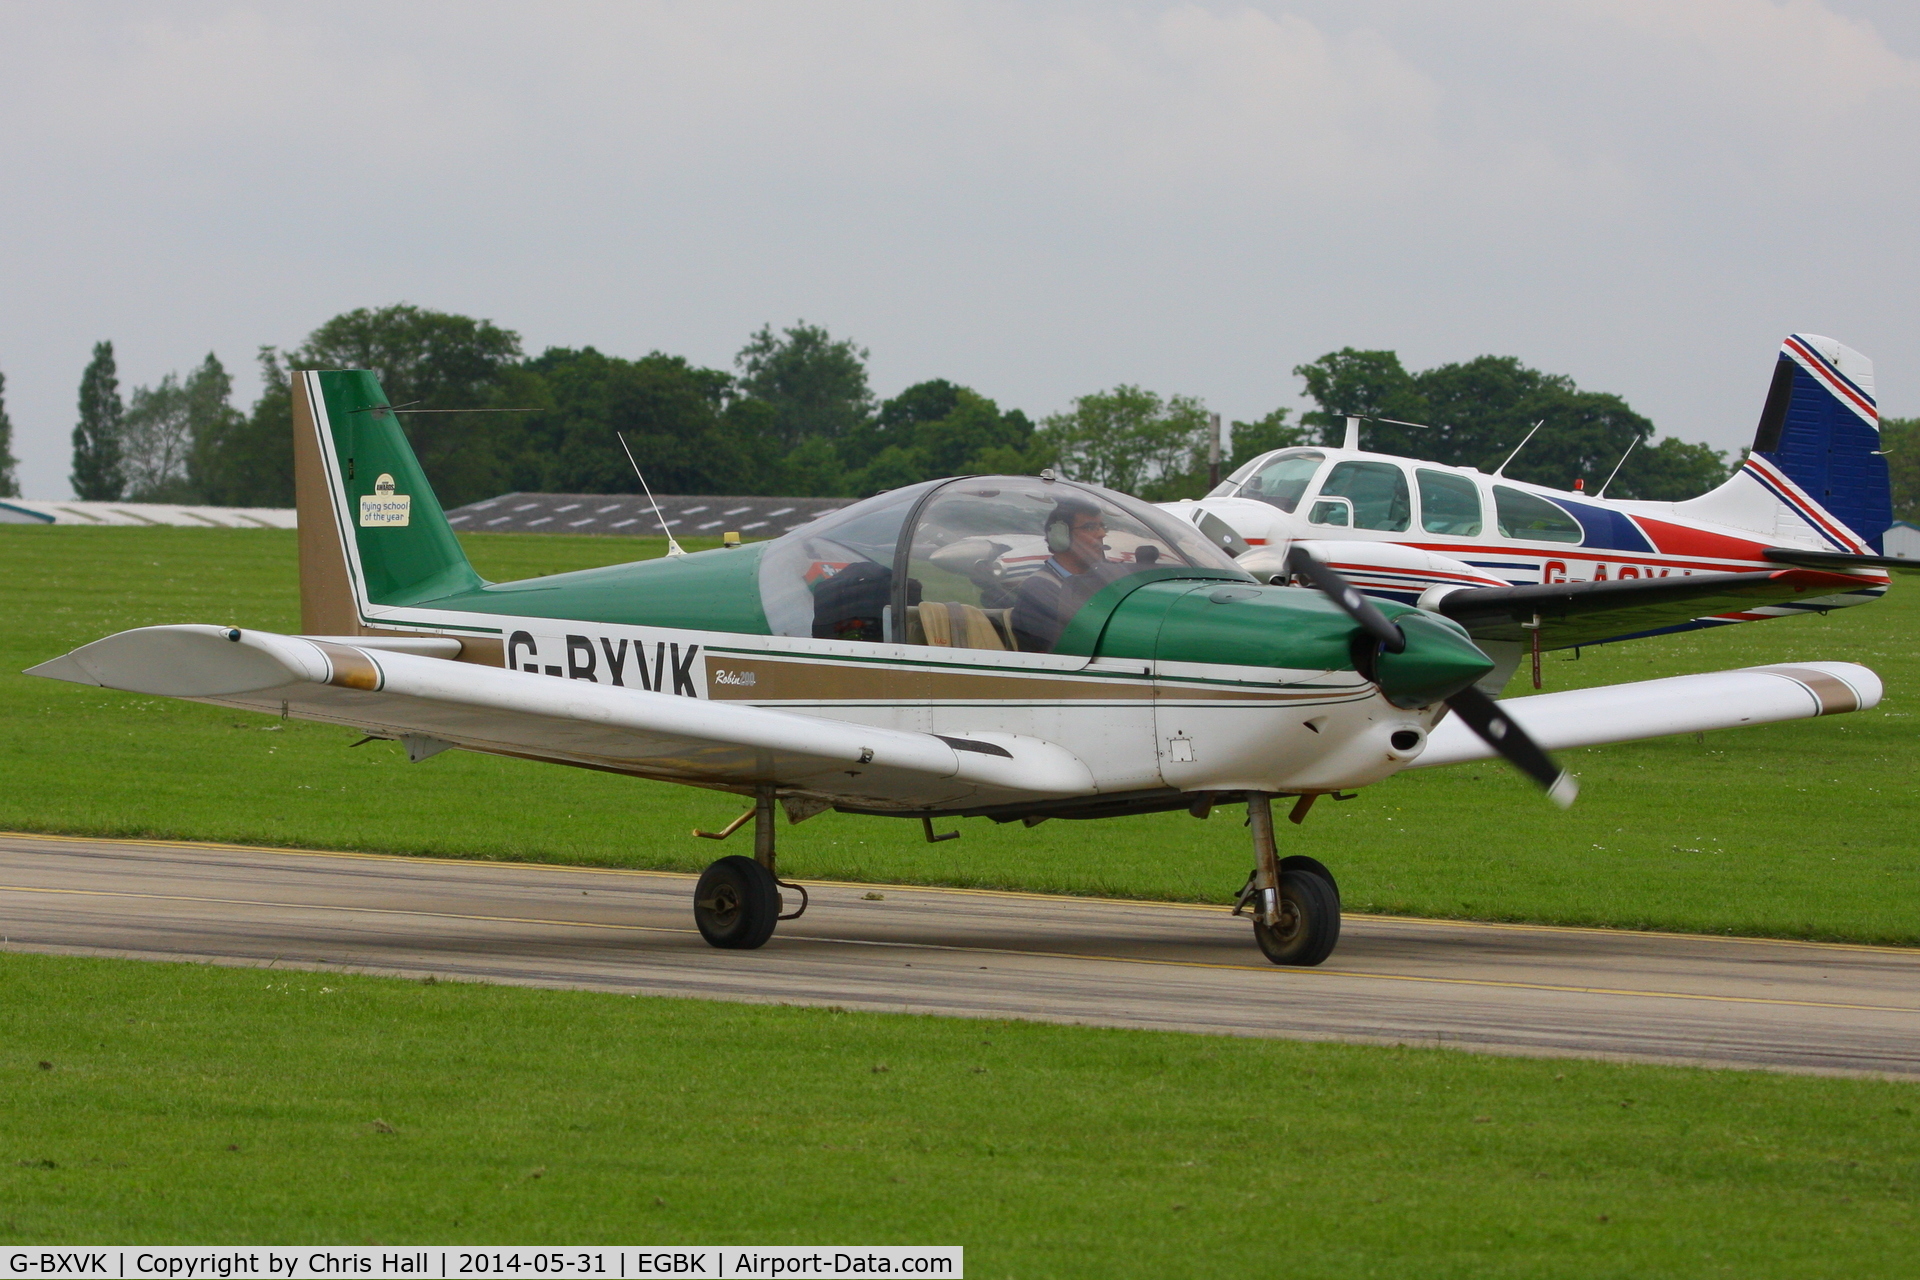 G-BXVK, 1998 Robin HR-200-120B C/N 326, at AeroExpo 2014